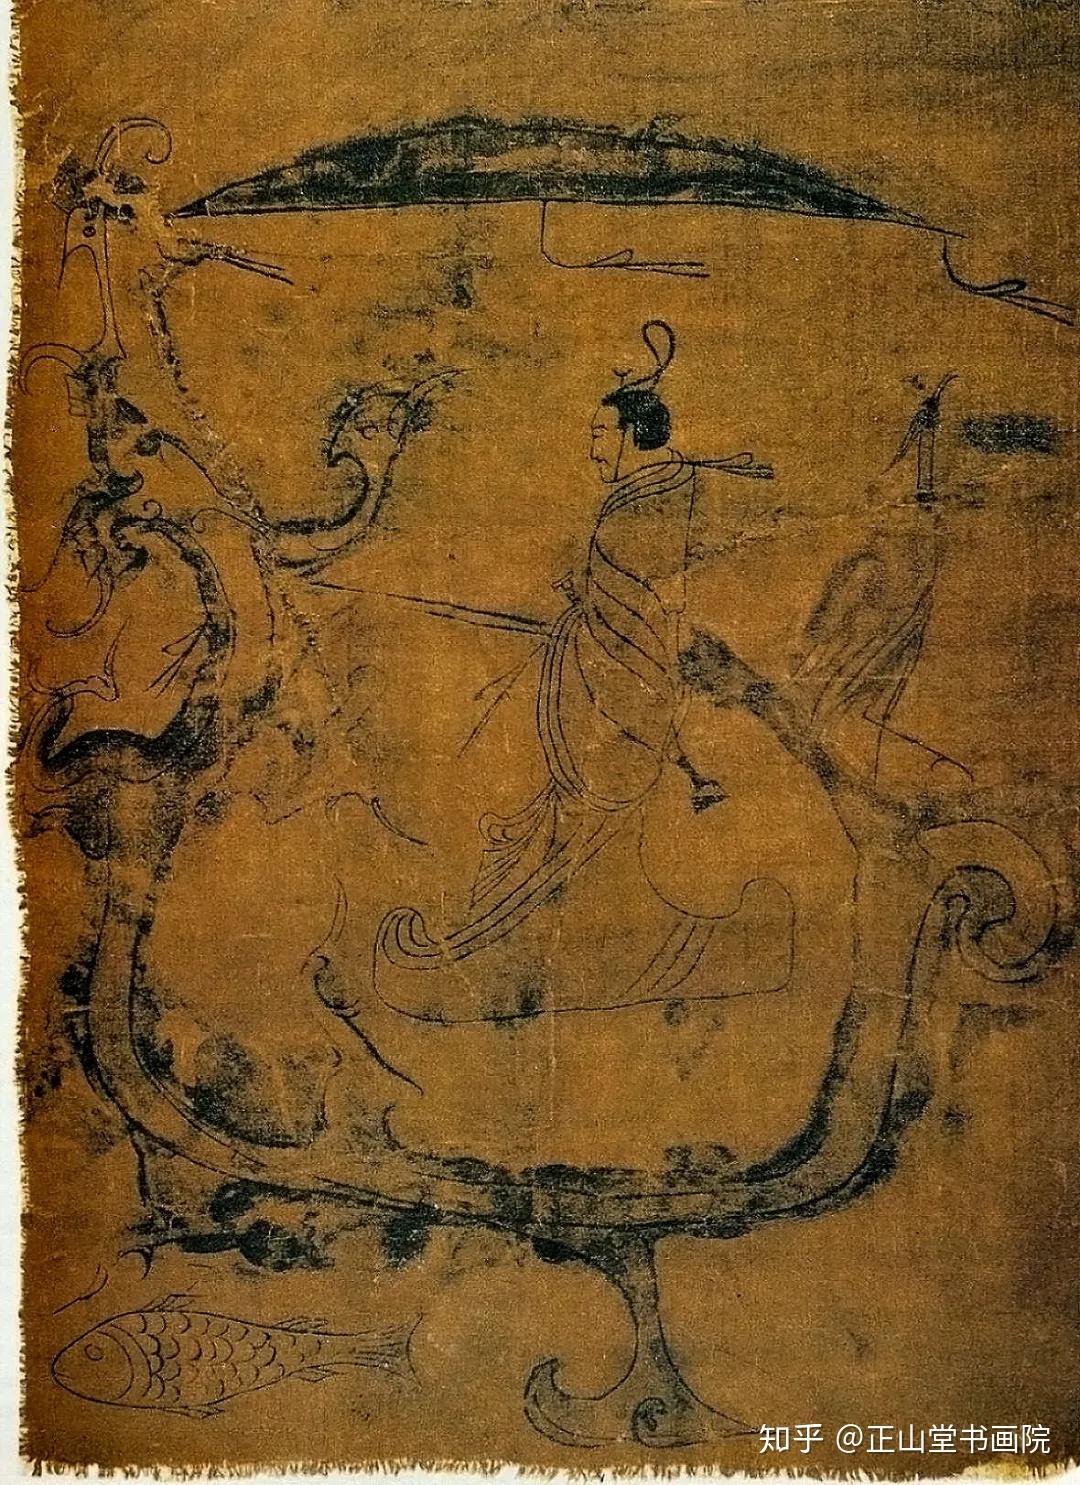 中国现存最早的人物画图片